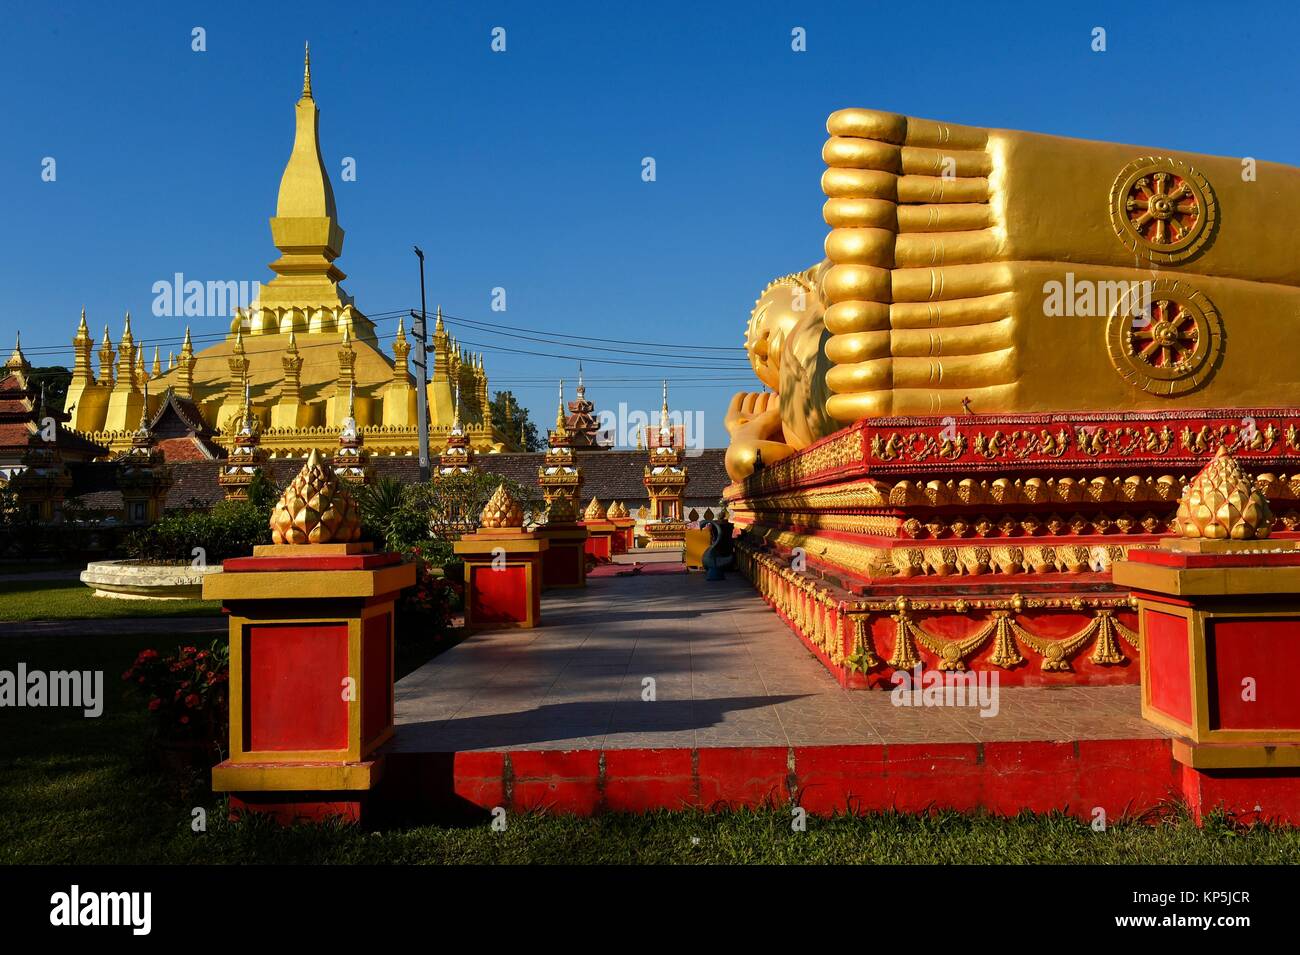 Oro gigante dormido estatua de Buda reclinado cerca del templo Wat That Luang, Vientiane, Laos, Sudeste de Asia. Foto de stock